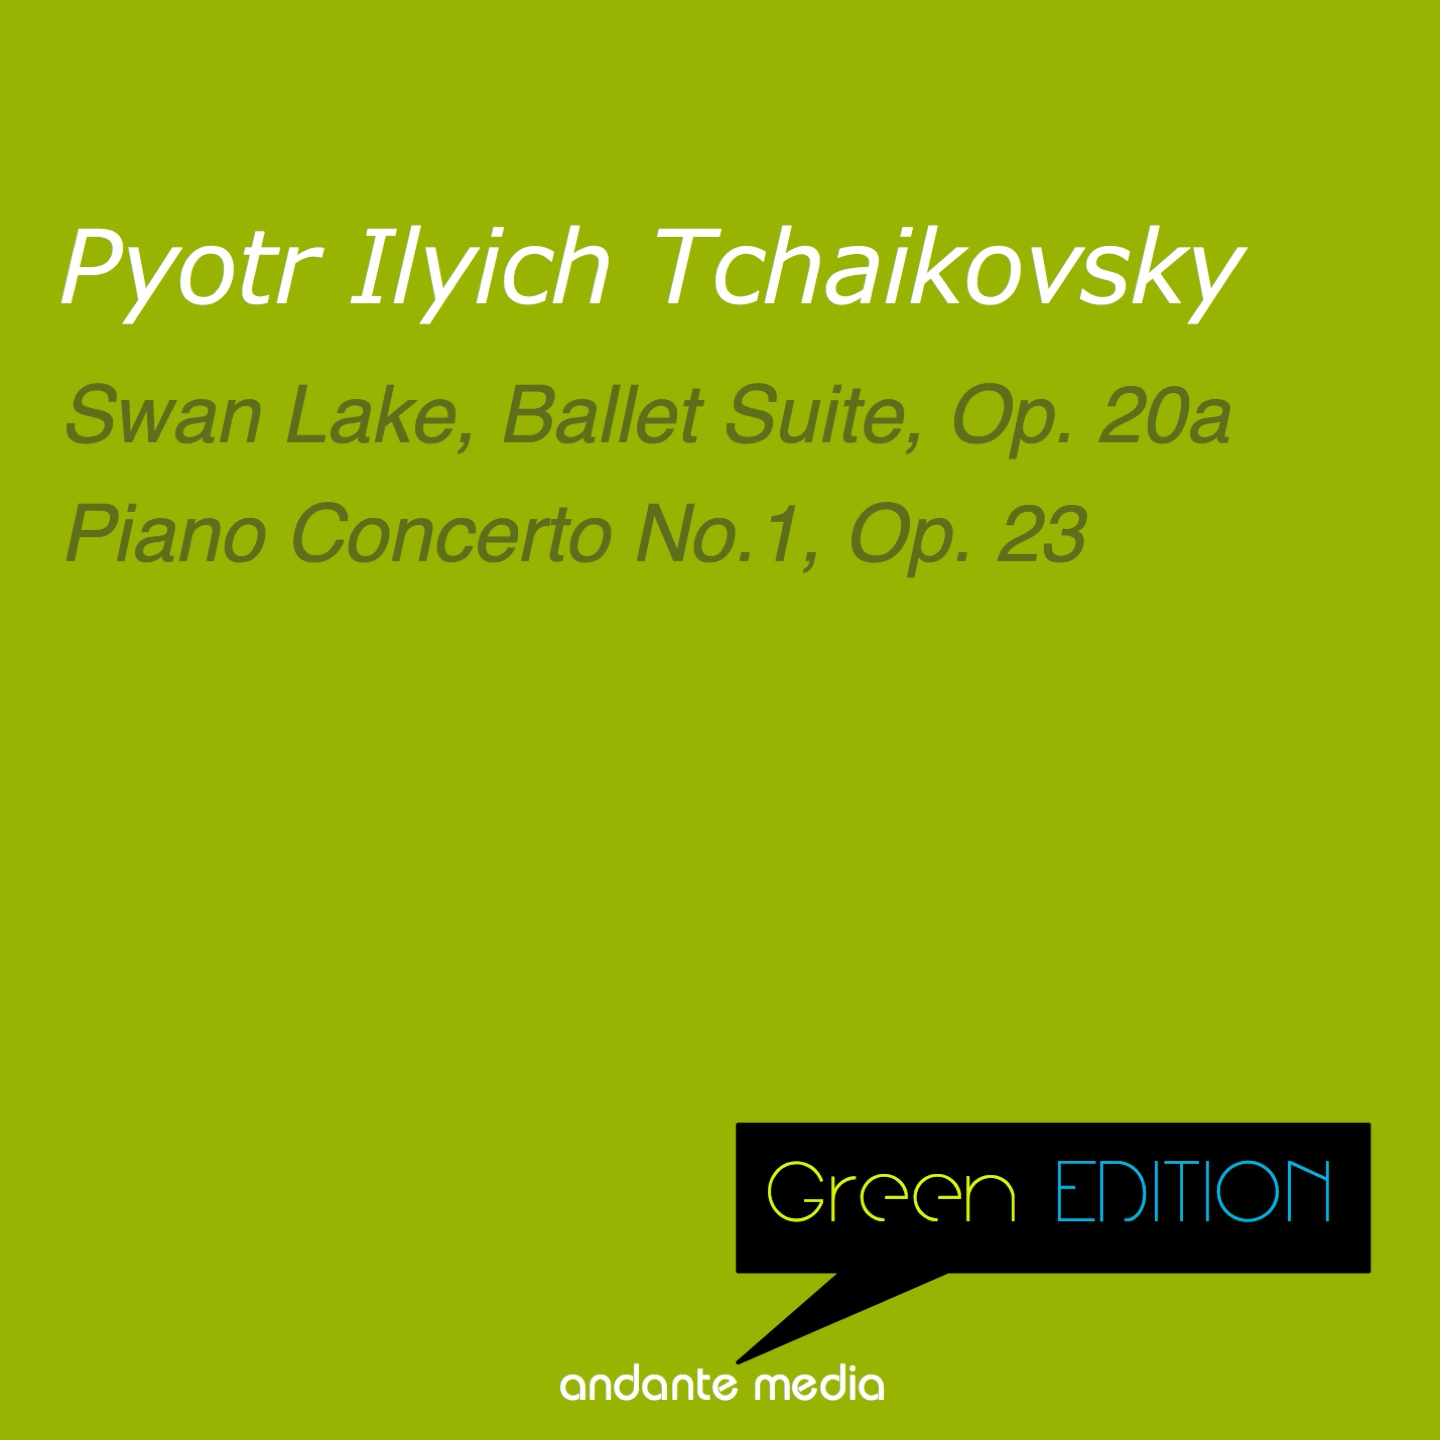 Piano Concerto No.1, Op. 23: I. Allegro non troppo e molto maestoso - Allegro con spirito (1888 Version)